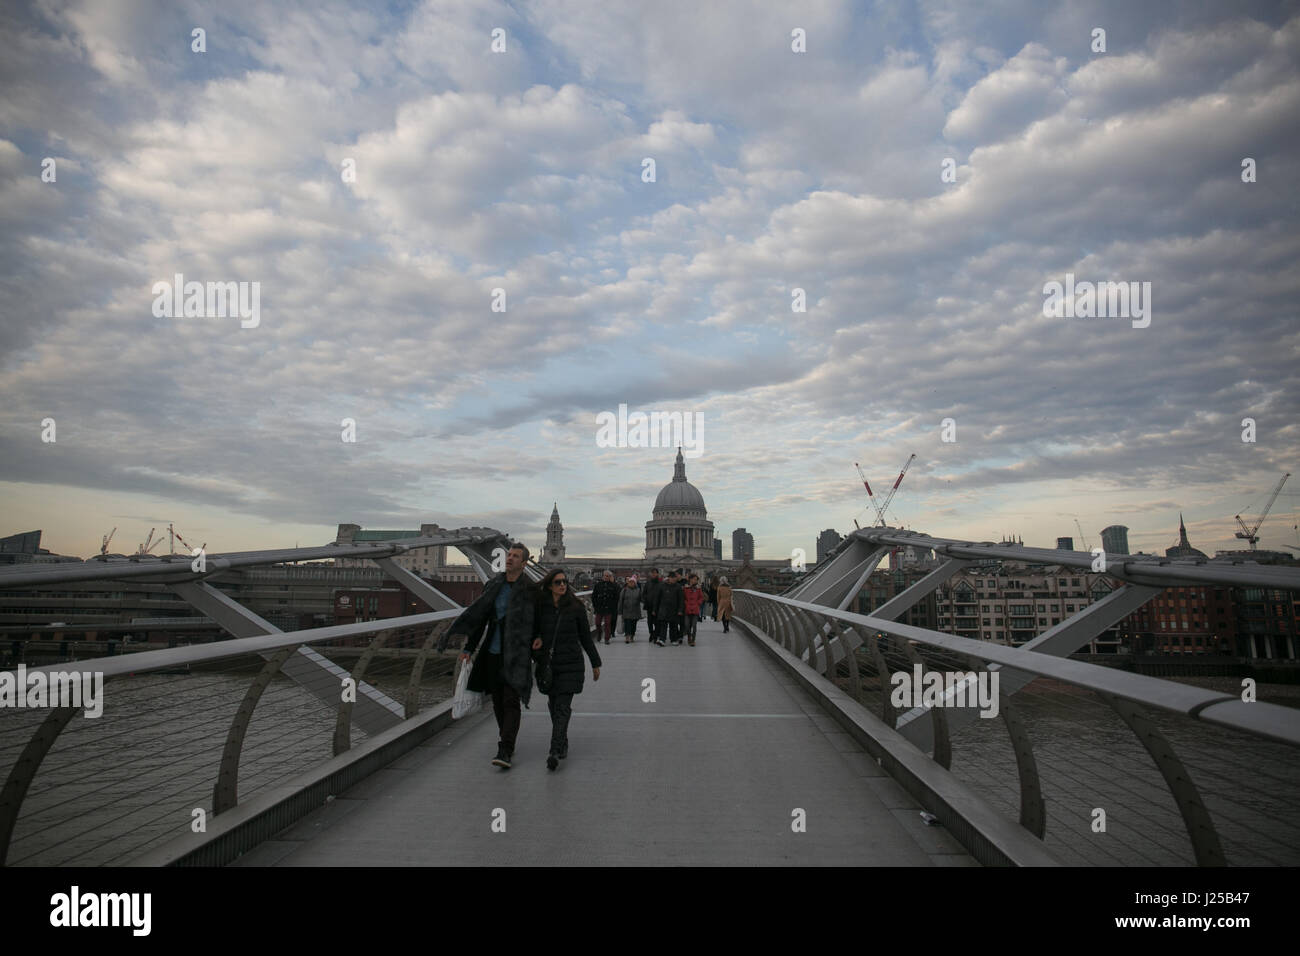 London millenium bridge Stock Photo